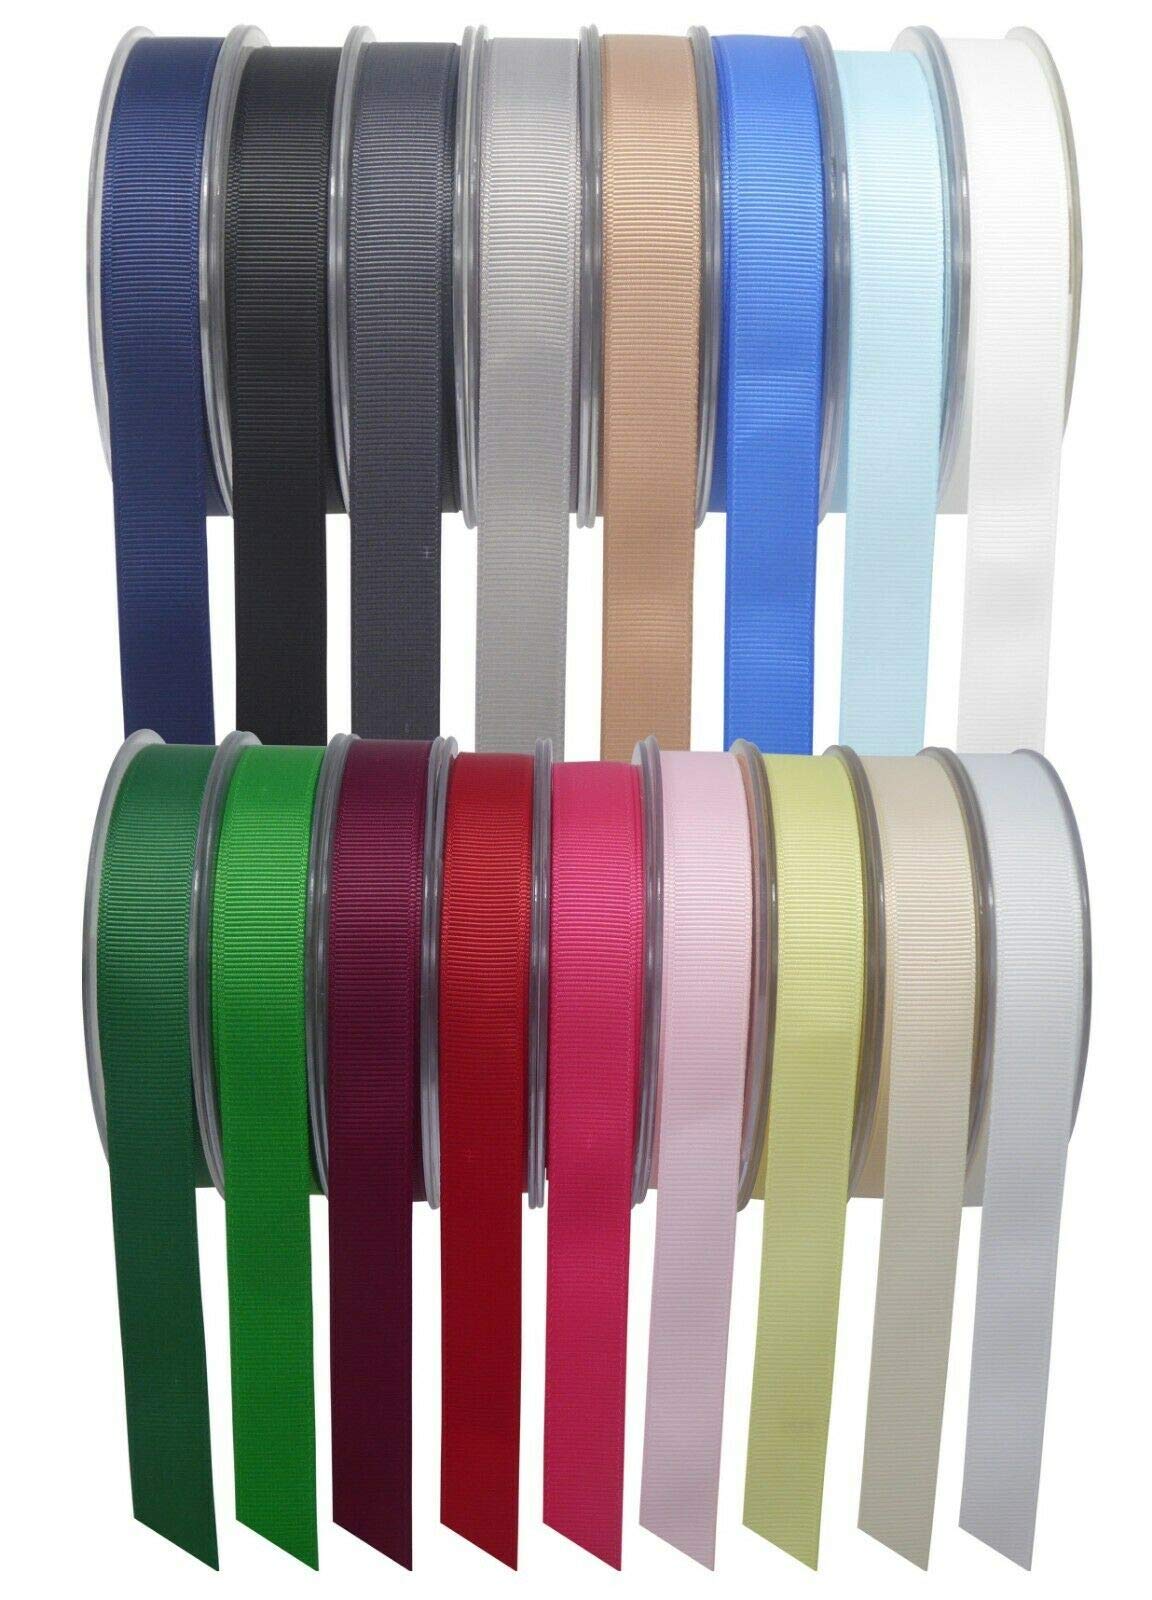 SR SUPER RIBBONS®™ Quality Reels Grosgrain Ribbon, 3mm 6mm 10mm 15mm 25mm & 40mm 20/50 Metre on Hard Plastic Reels (Purple, 6mm x 20m)